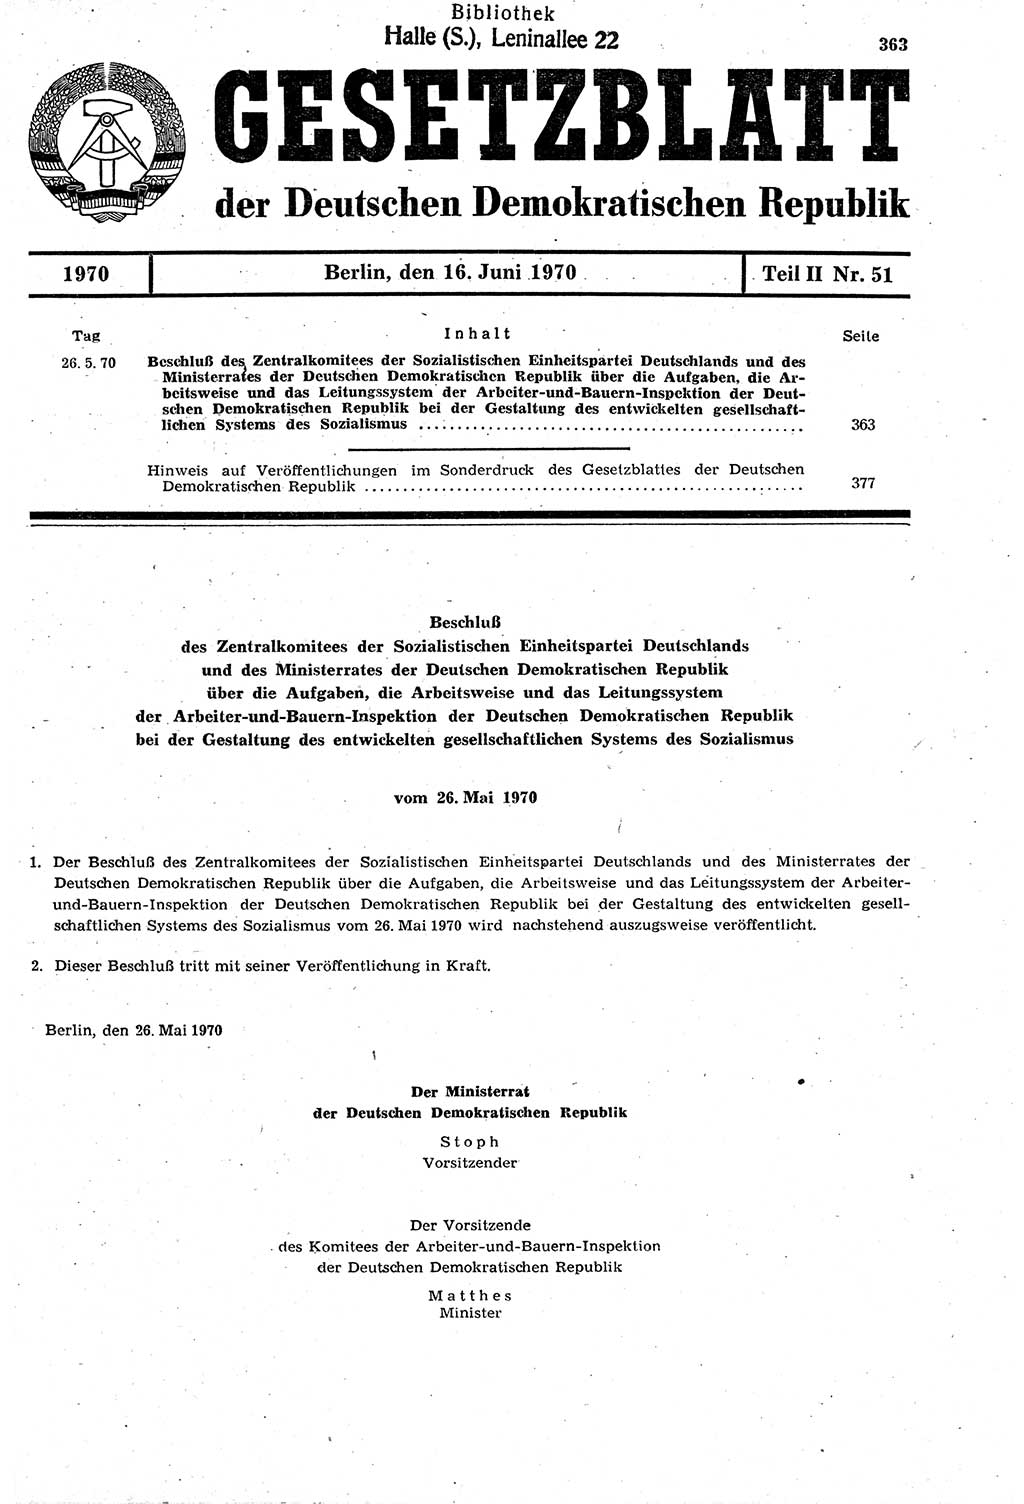 Gesetzblatt (GBl.) der Deutschen Demokratischen Republik (DDR) Teil ⅠⅠ 1970, Seite 363 (GBl. DDR ⅠⅠ 1970, S. 363)